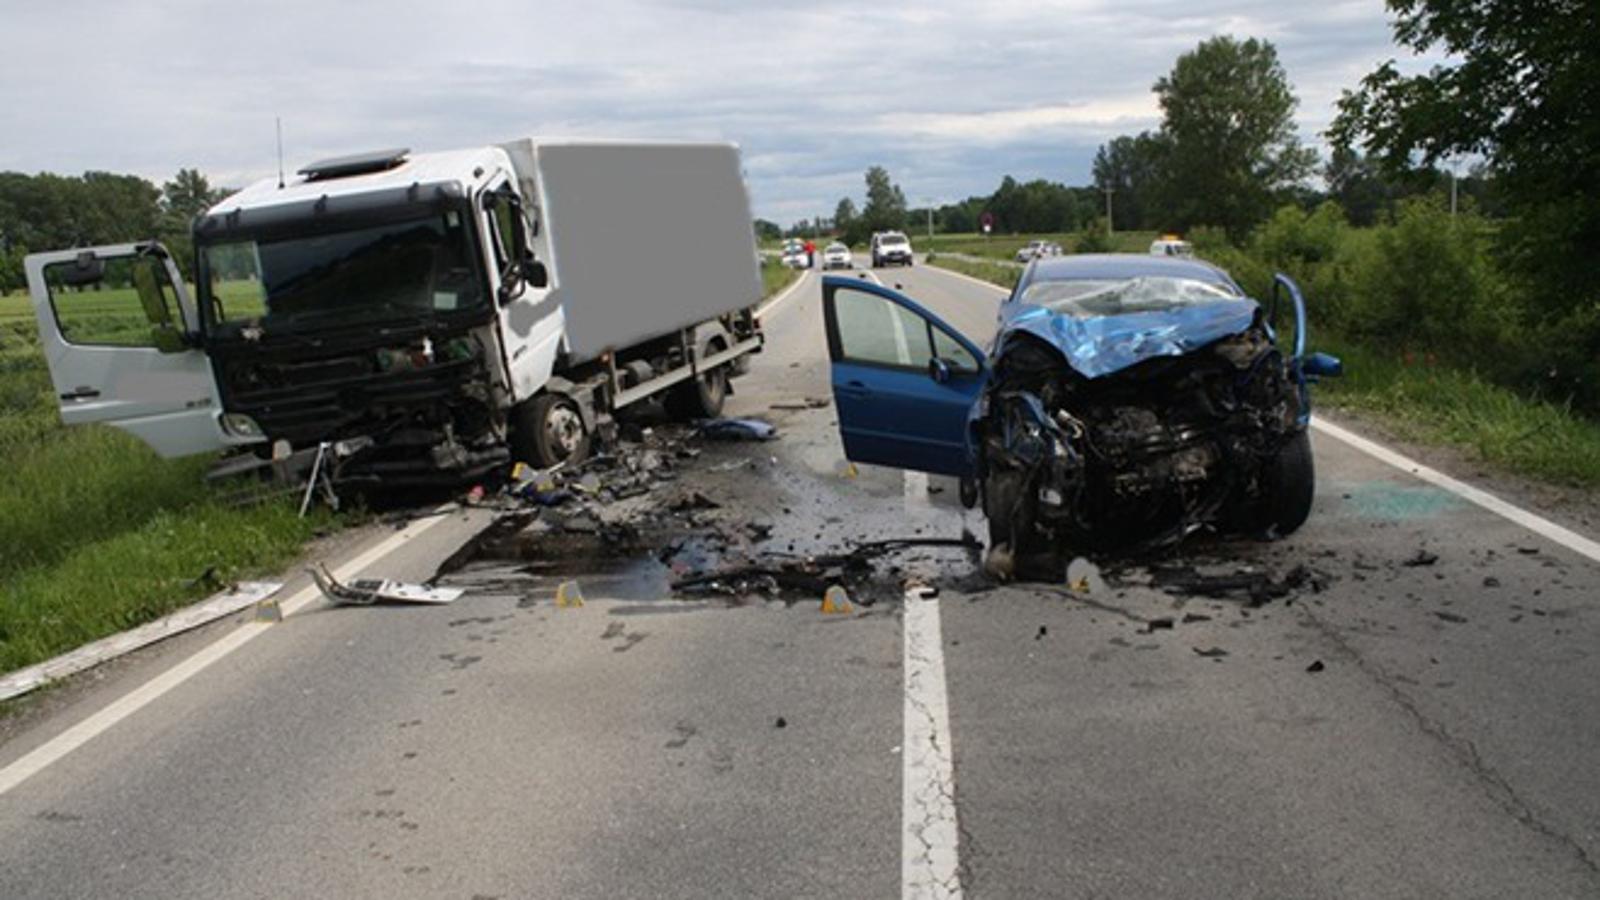 Prometna nesreća u Velikoj Kopanici 27.5.2013.